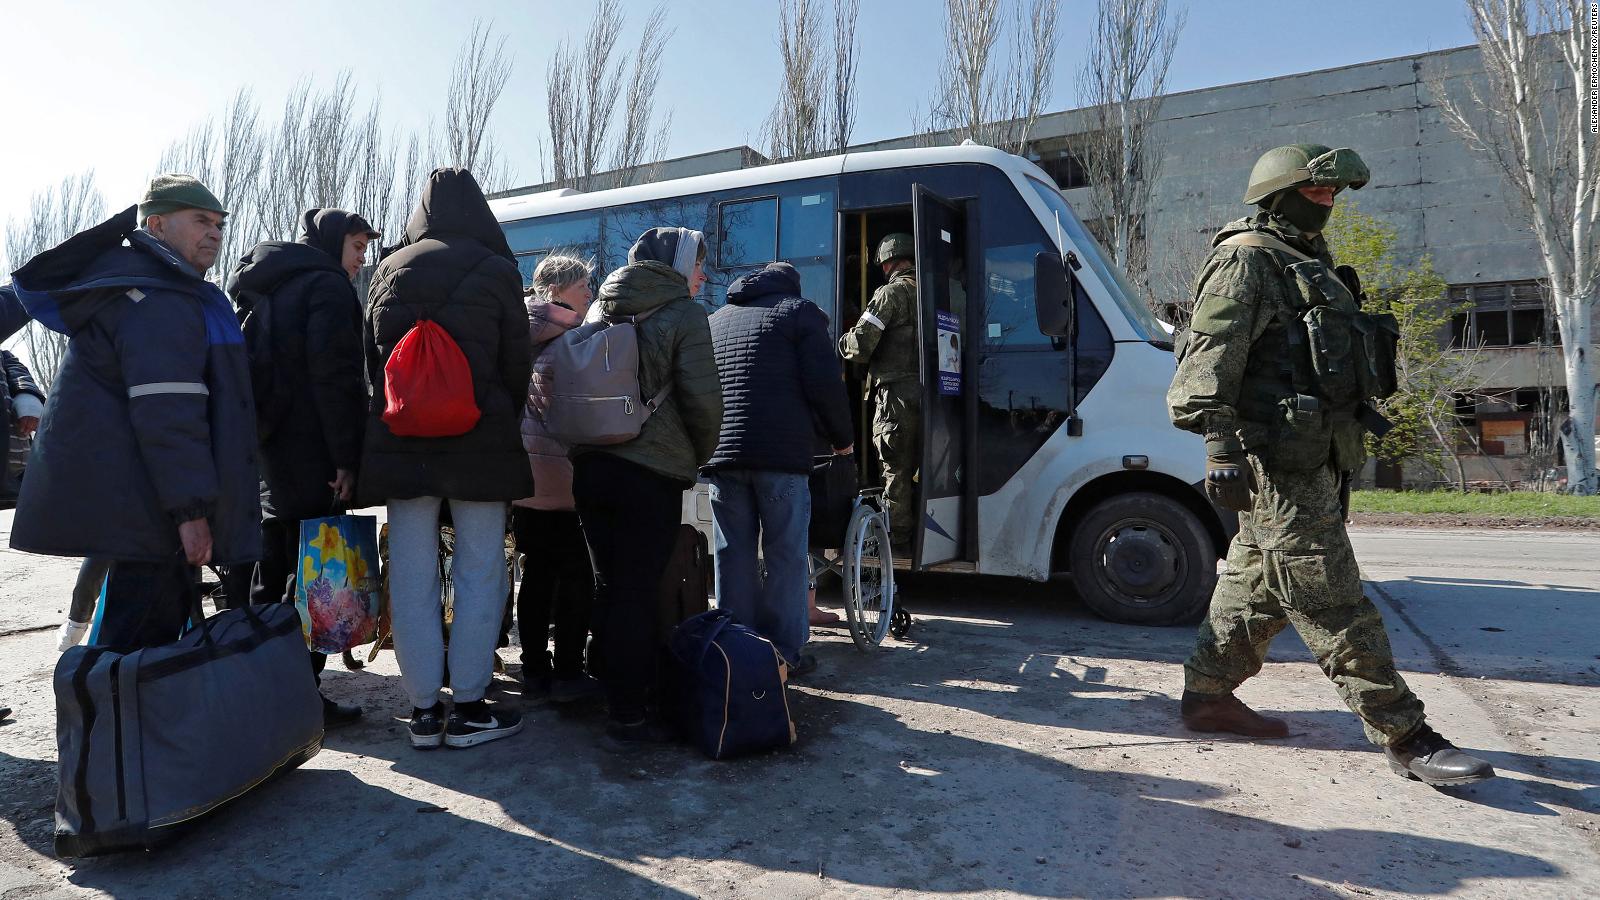 Ukraine Initiates Evacuation Amid Escalating Tensions